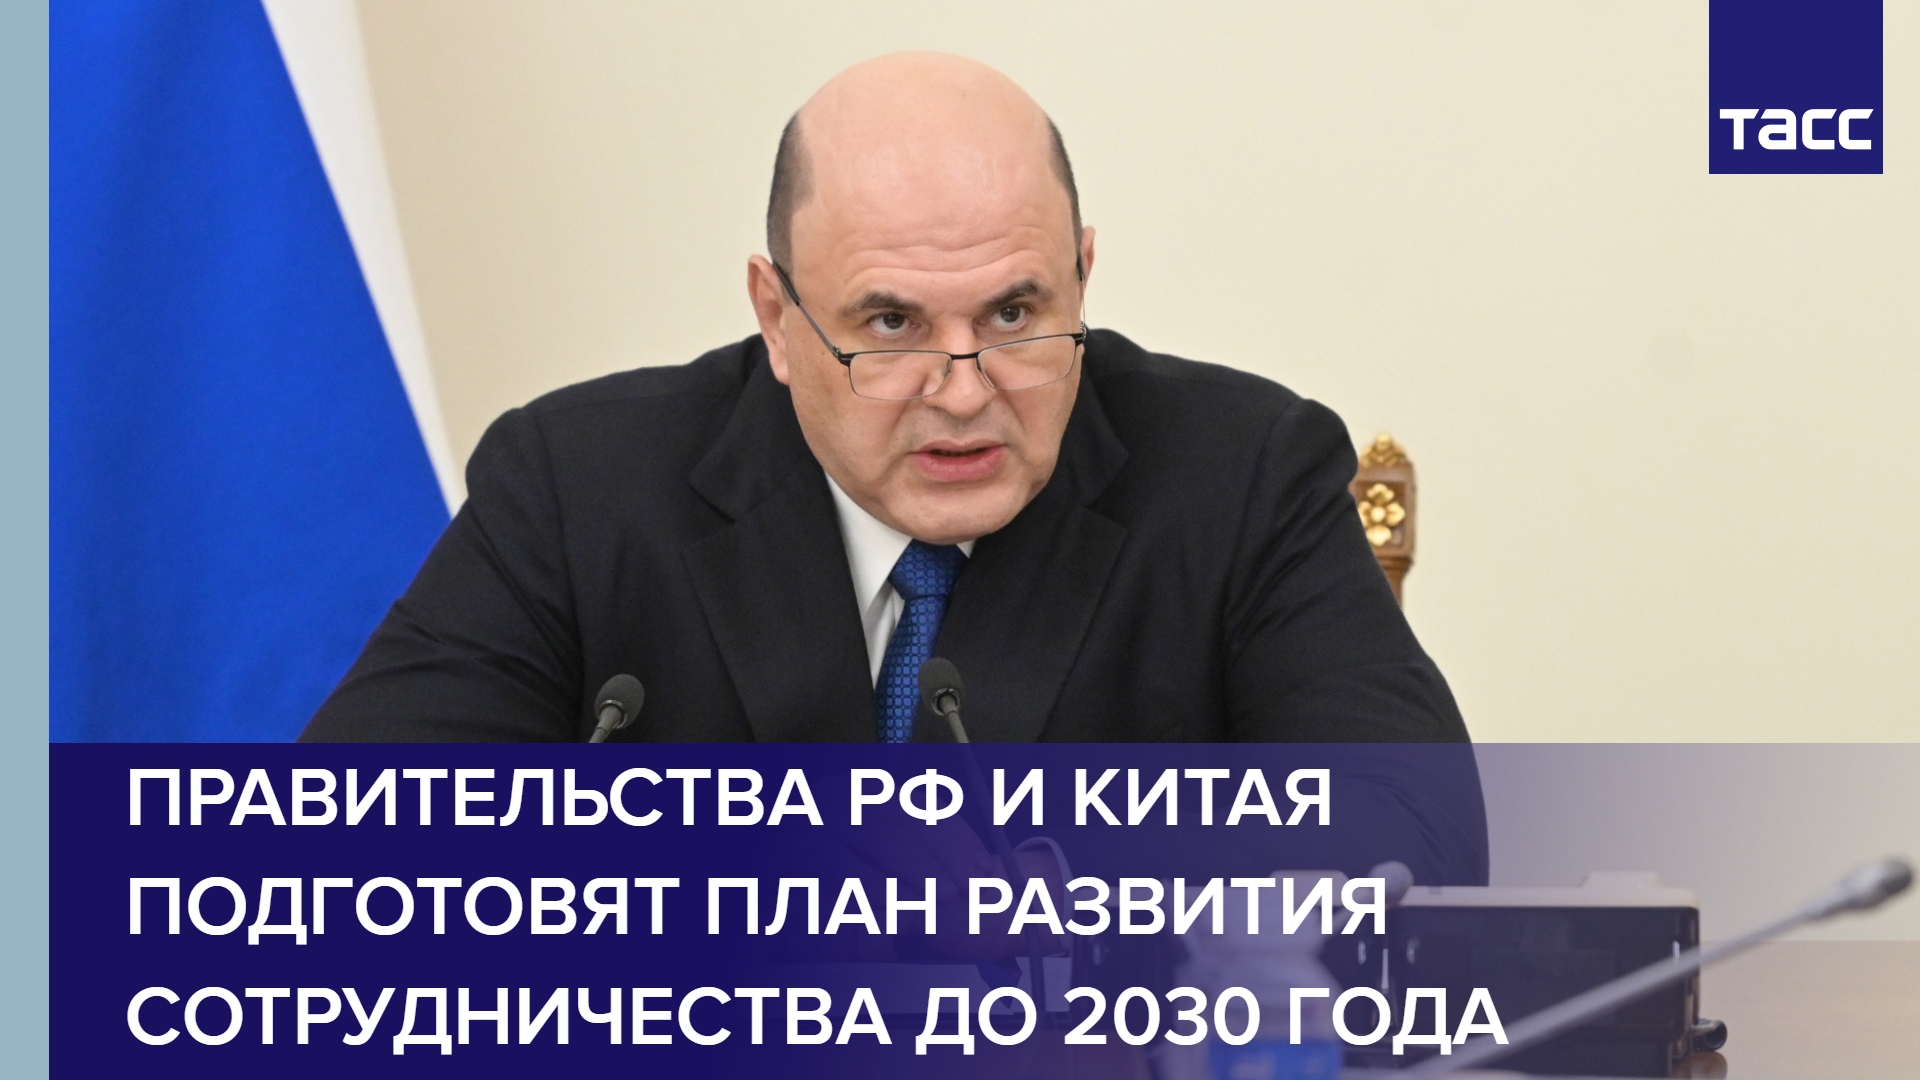 Правительства РФ и Китая подготовят план развития сотрудничества до 2030 года